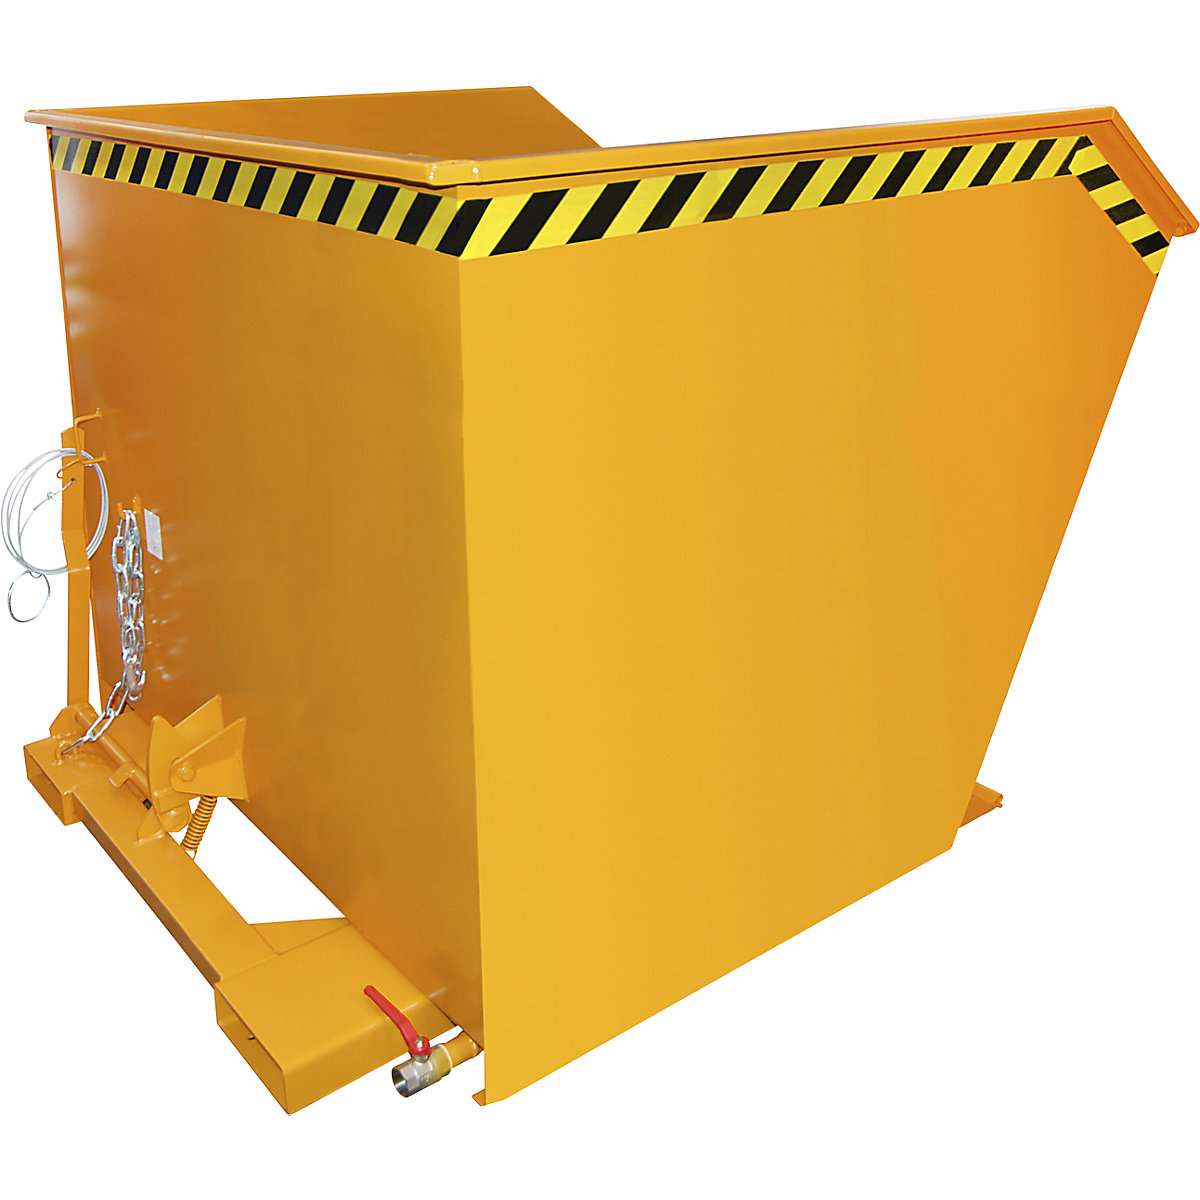 Conteneur pour copeaux SGU – eurokraft pro, capacité 2 m³, orange jaune-2